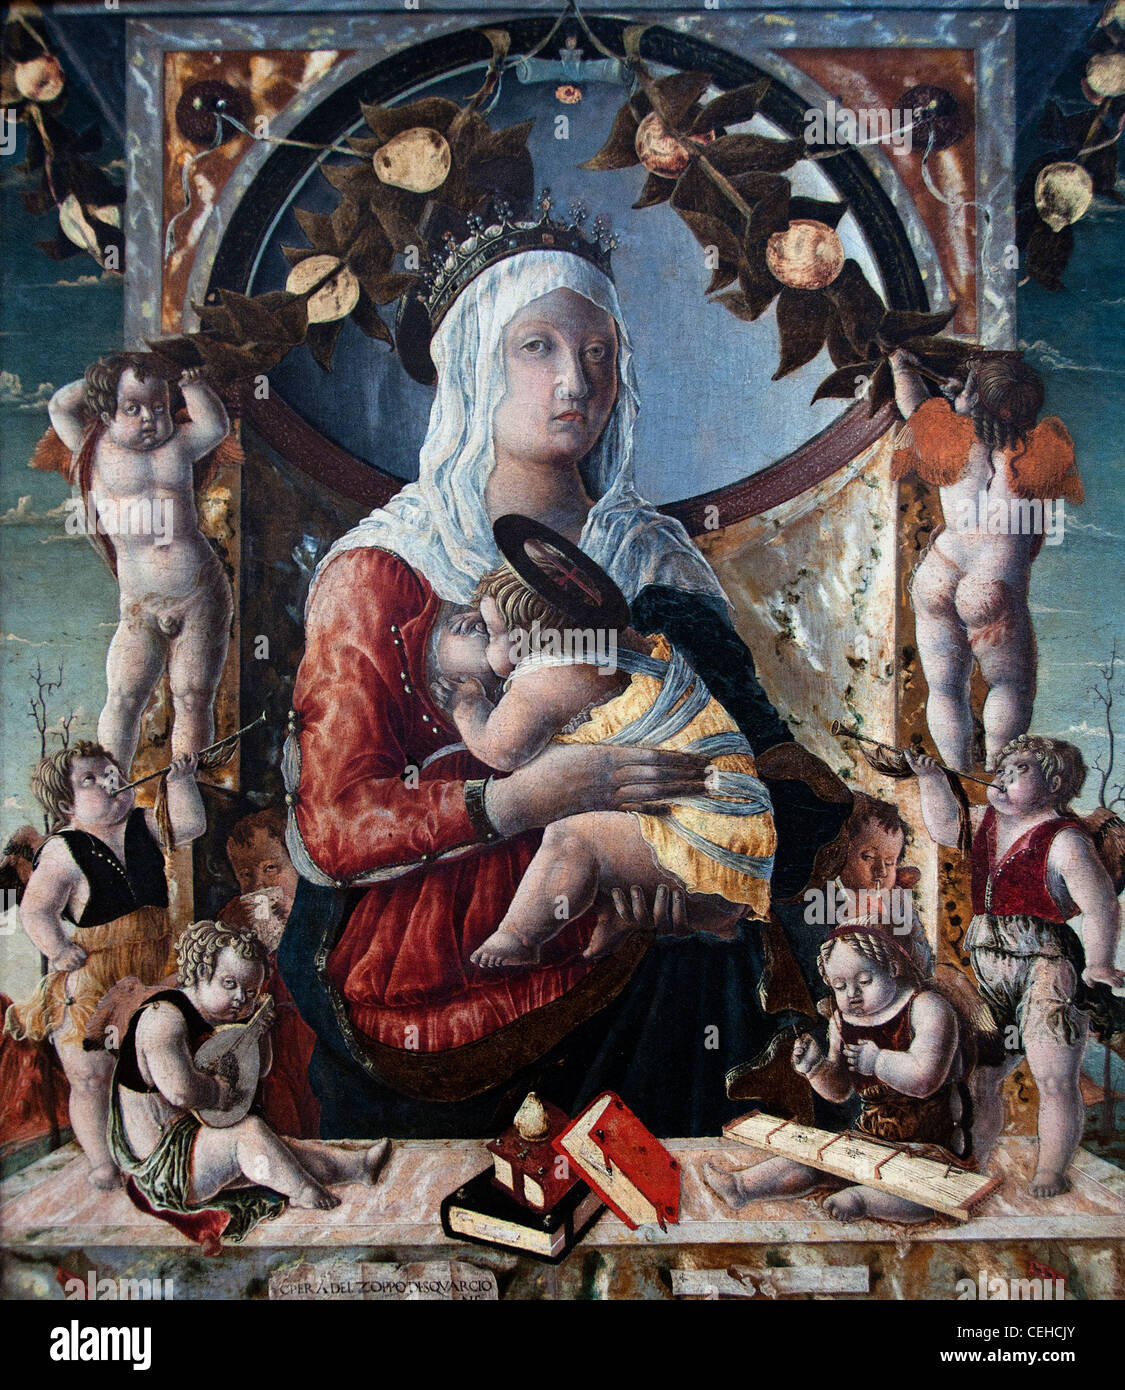 The Virgin and Child with Eight Angels La Vierge et L'enfant entoures de huit anges 1455 LO Zoppo Marco d Antonio di Ruggero Stock Photo